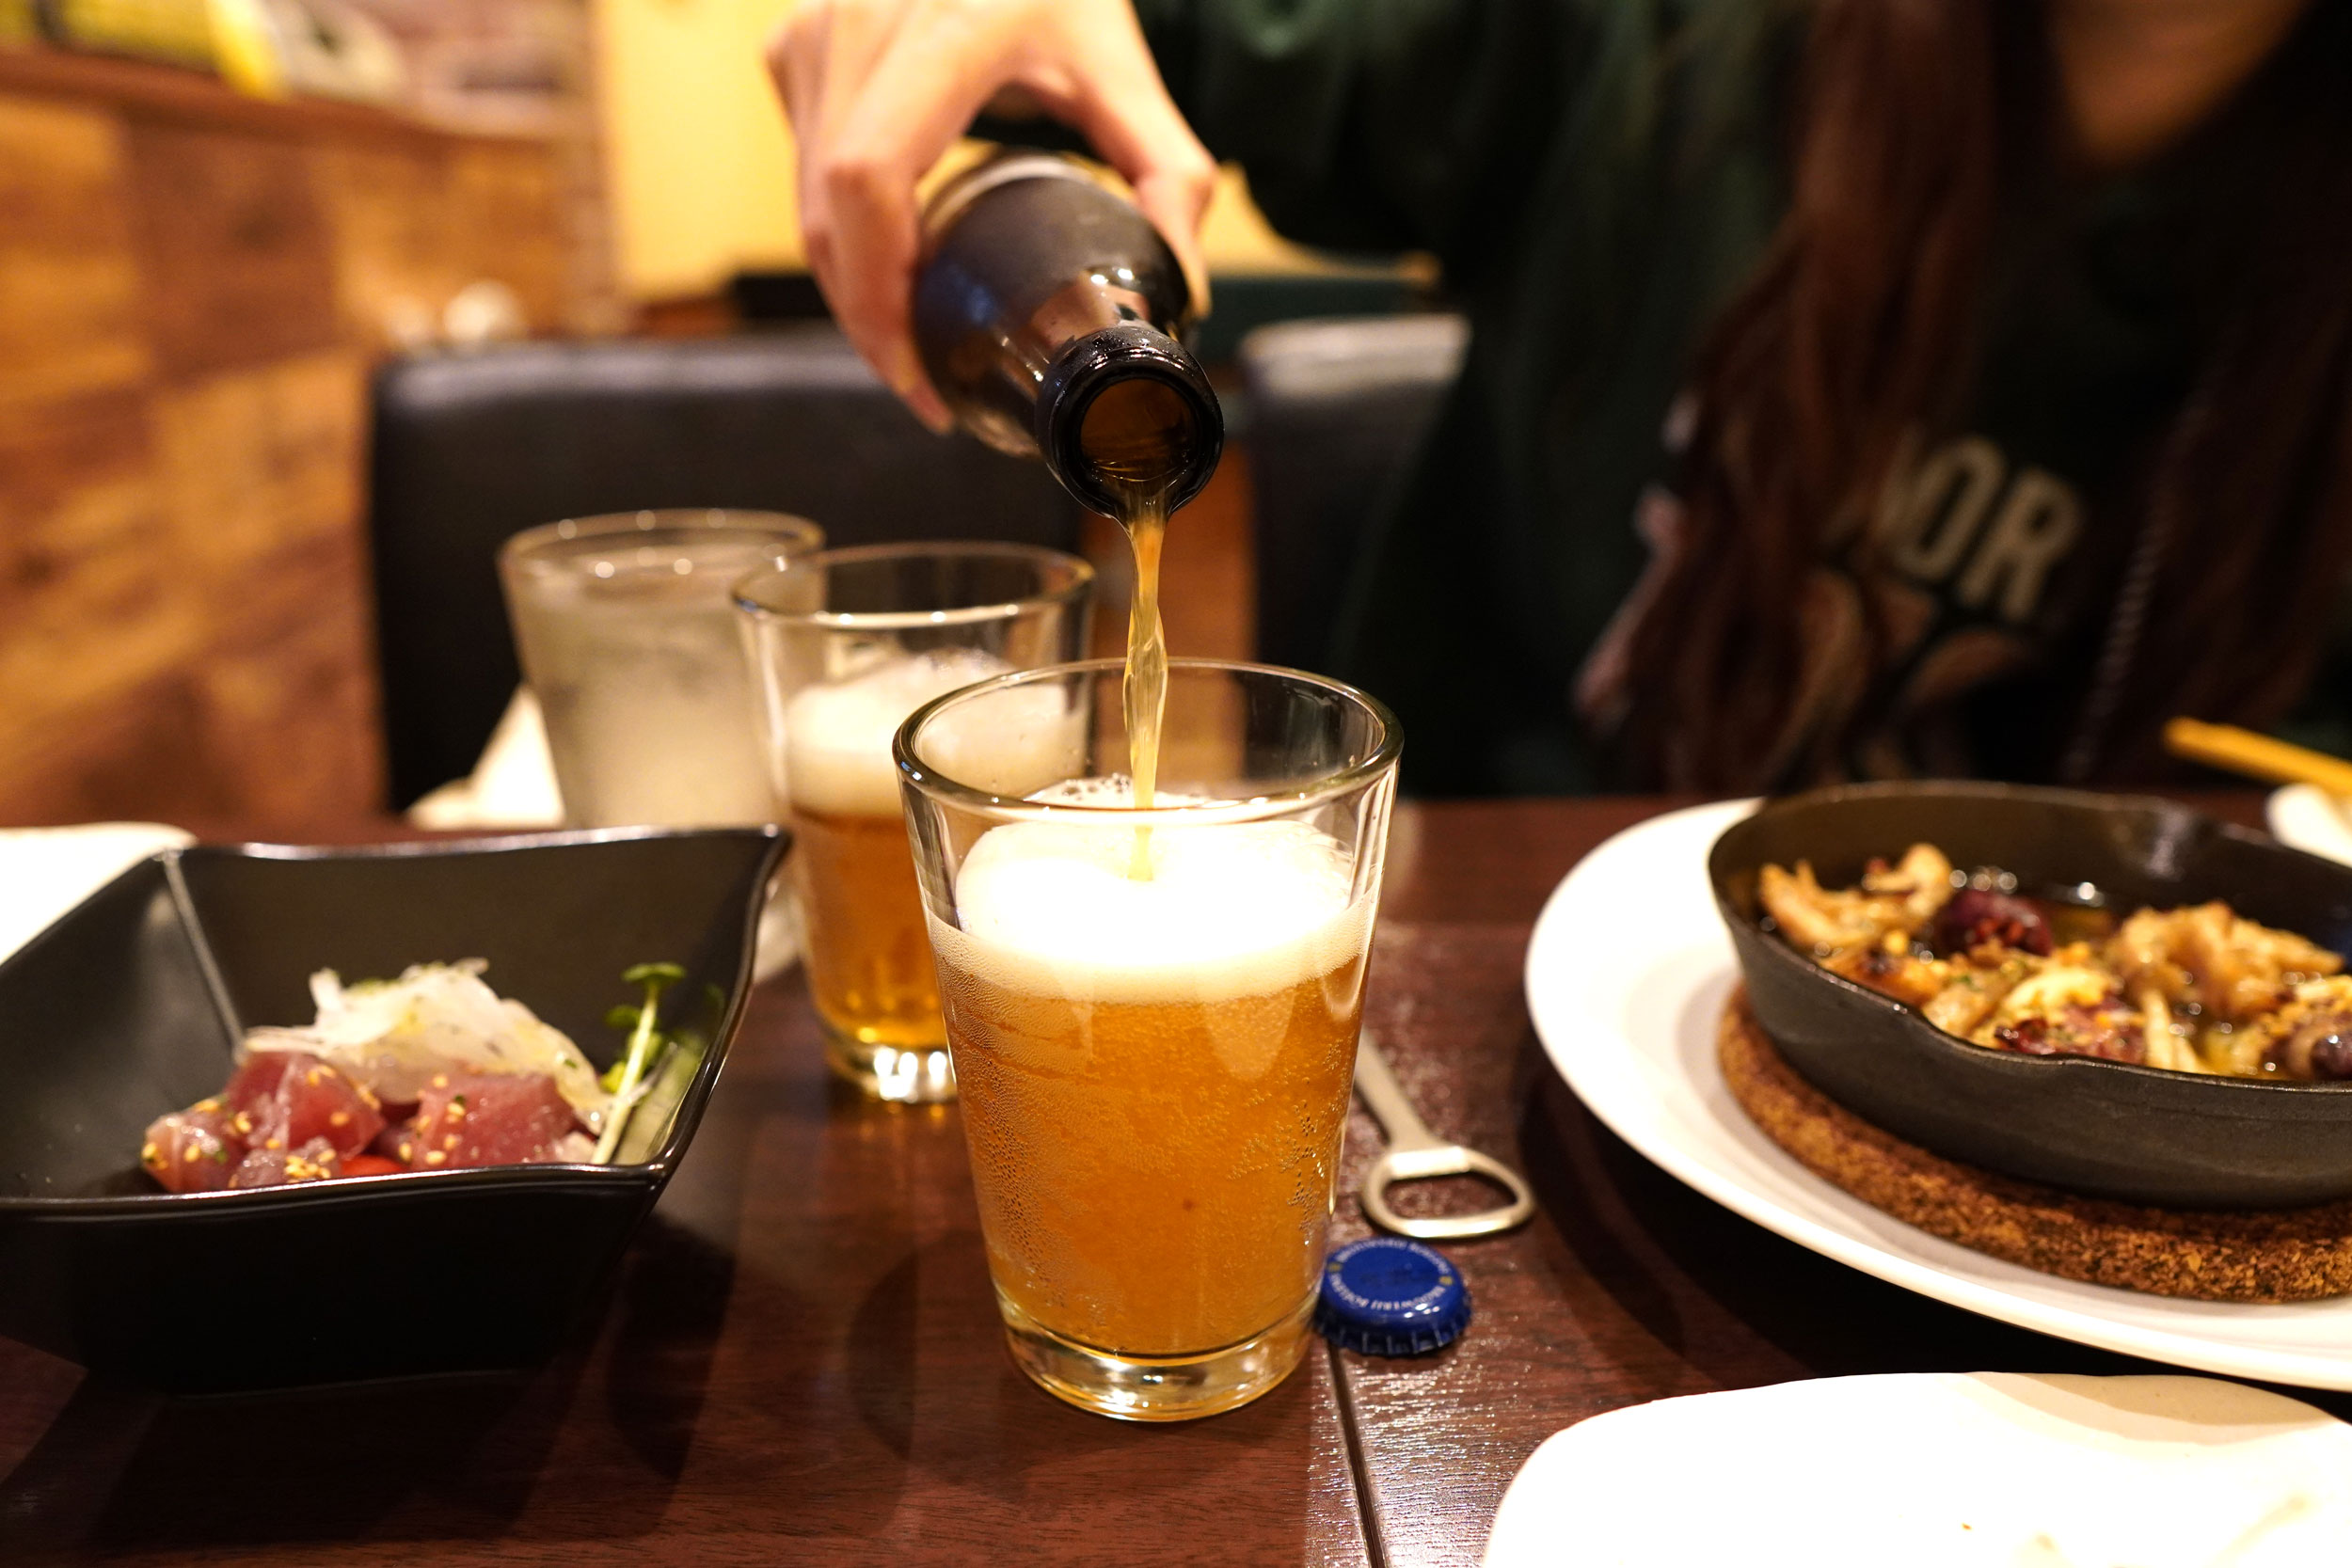 海外のクラフトビール、Bieken（ビーケン）をグラスに注いでいる女性の写真。